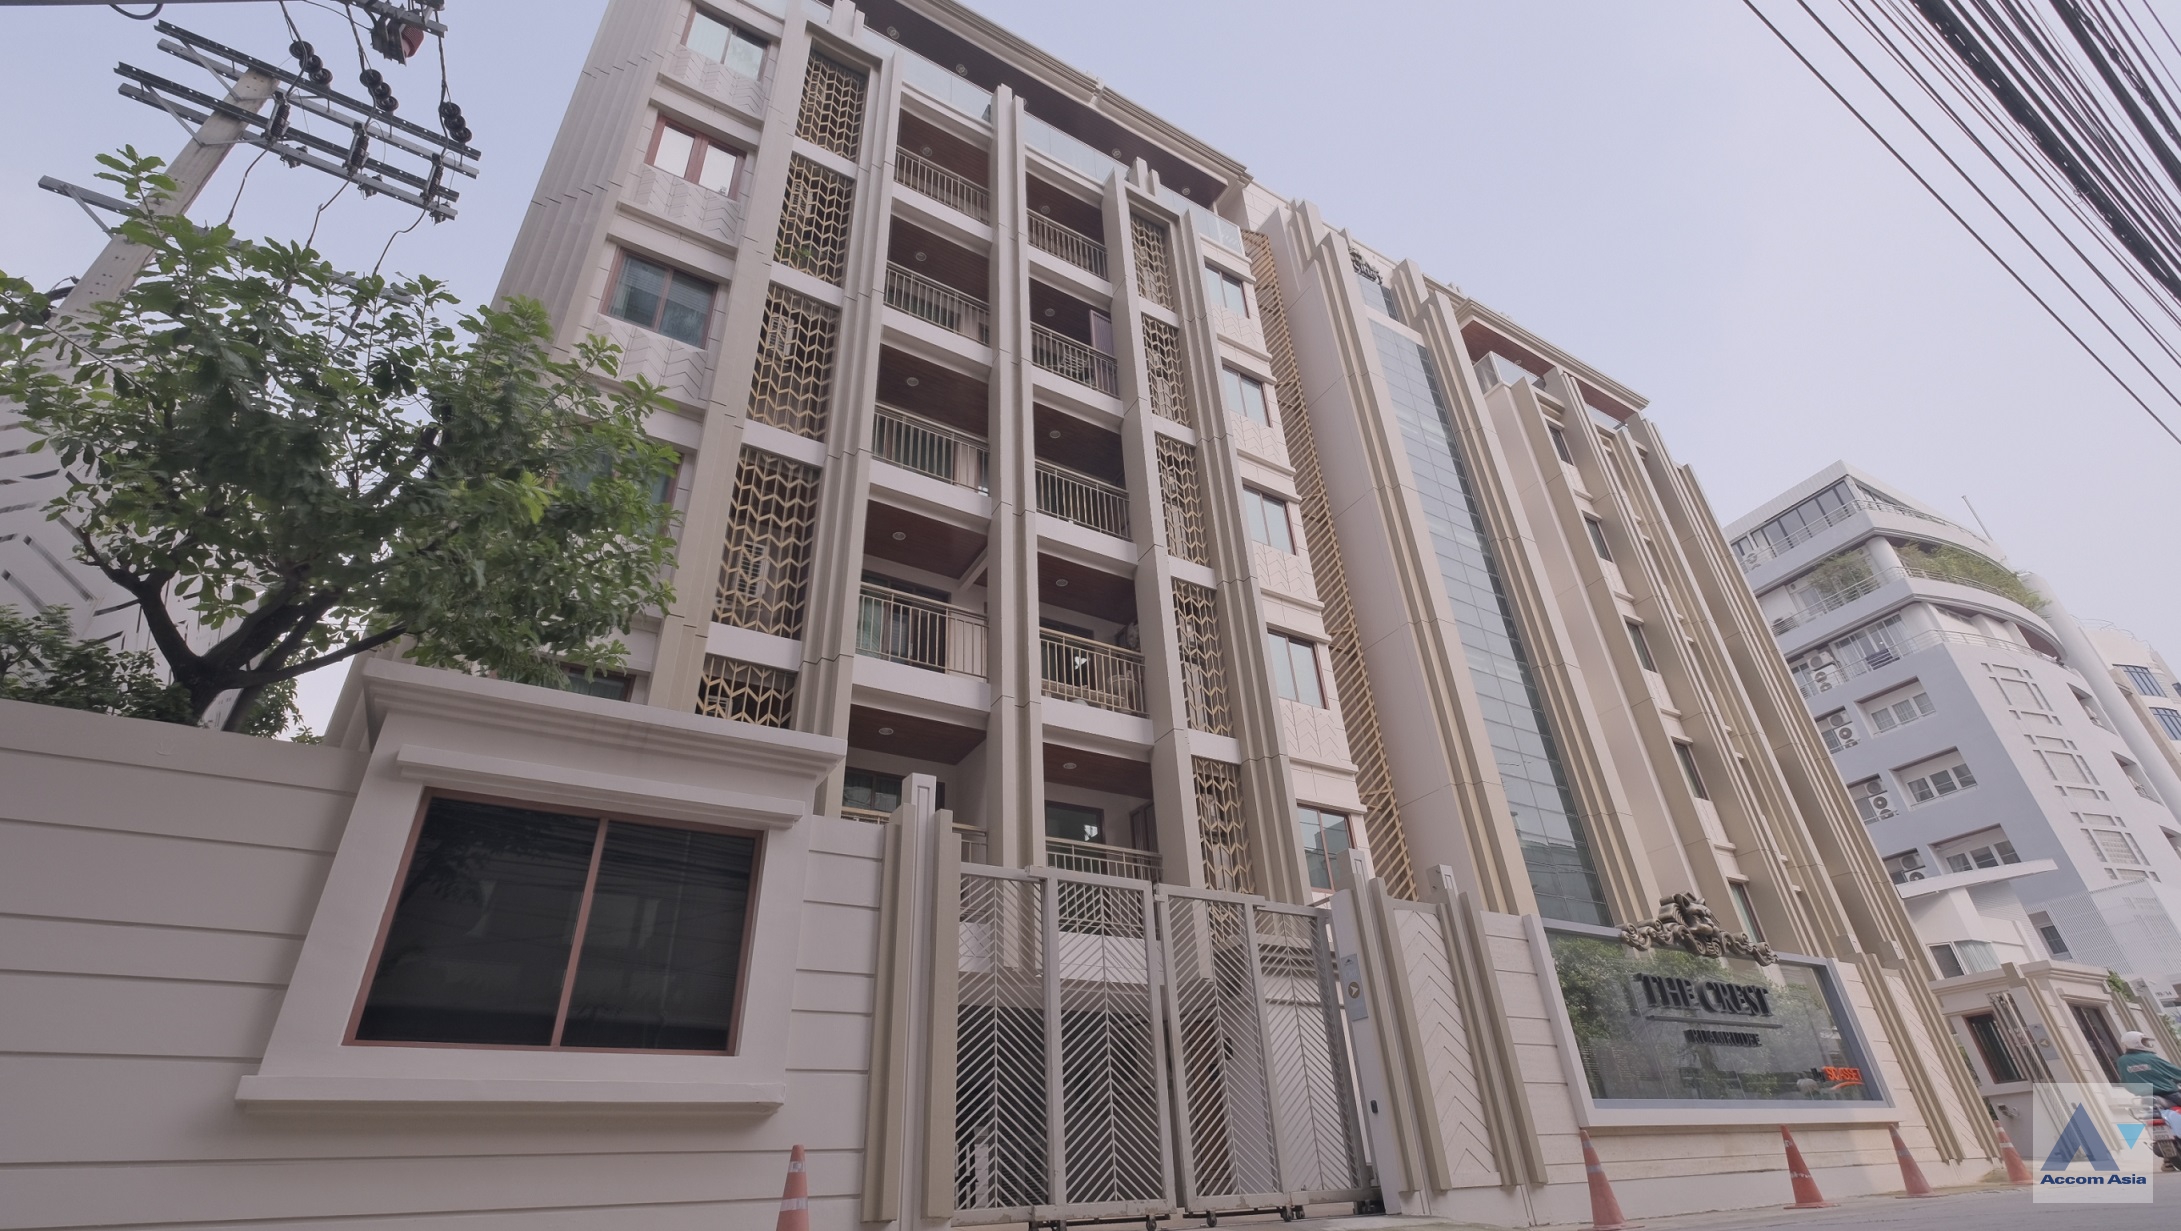 1 The Crest Ruamrudee - Condominium - Ruamrudee - Bangkok / Accomasia